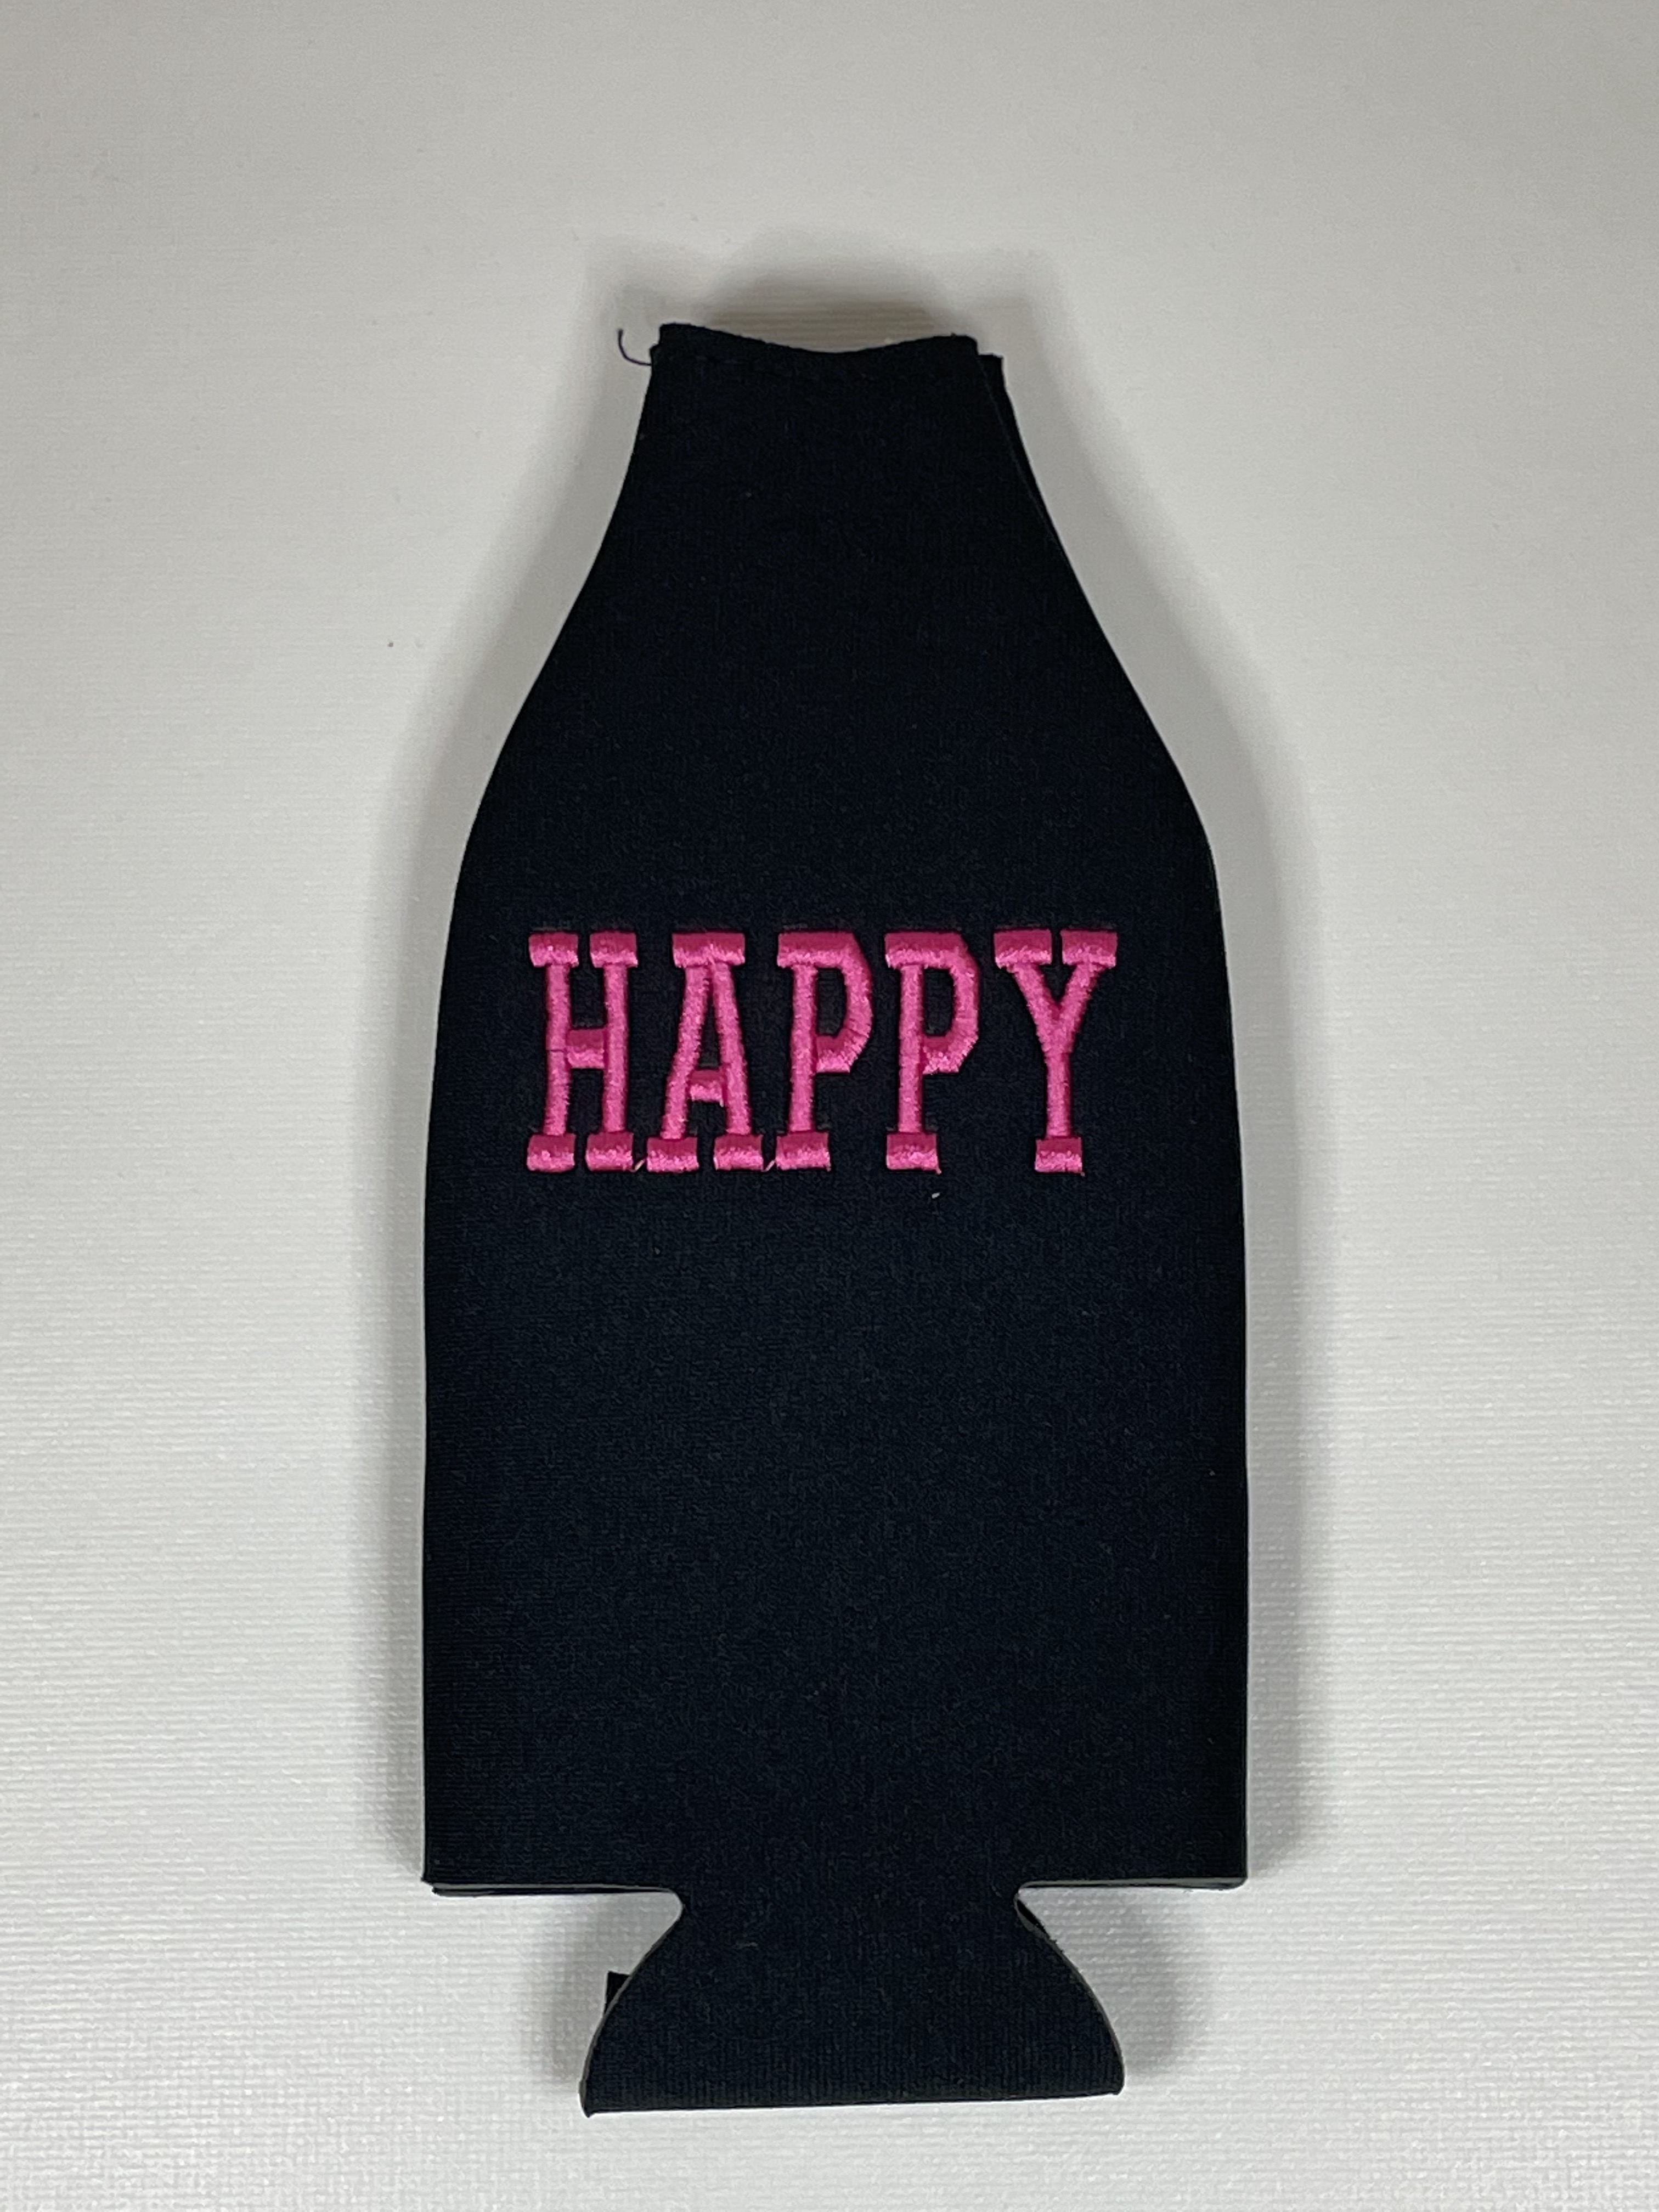 Capa de cerveja longneck HAPPY pink